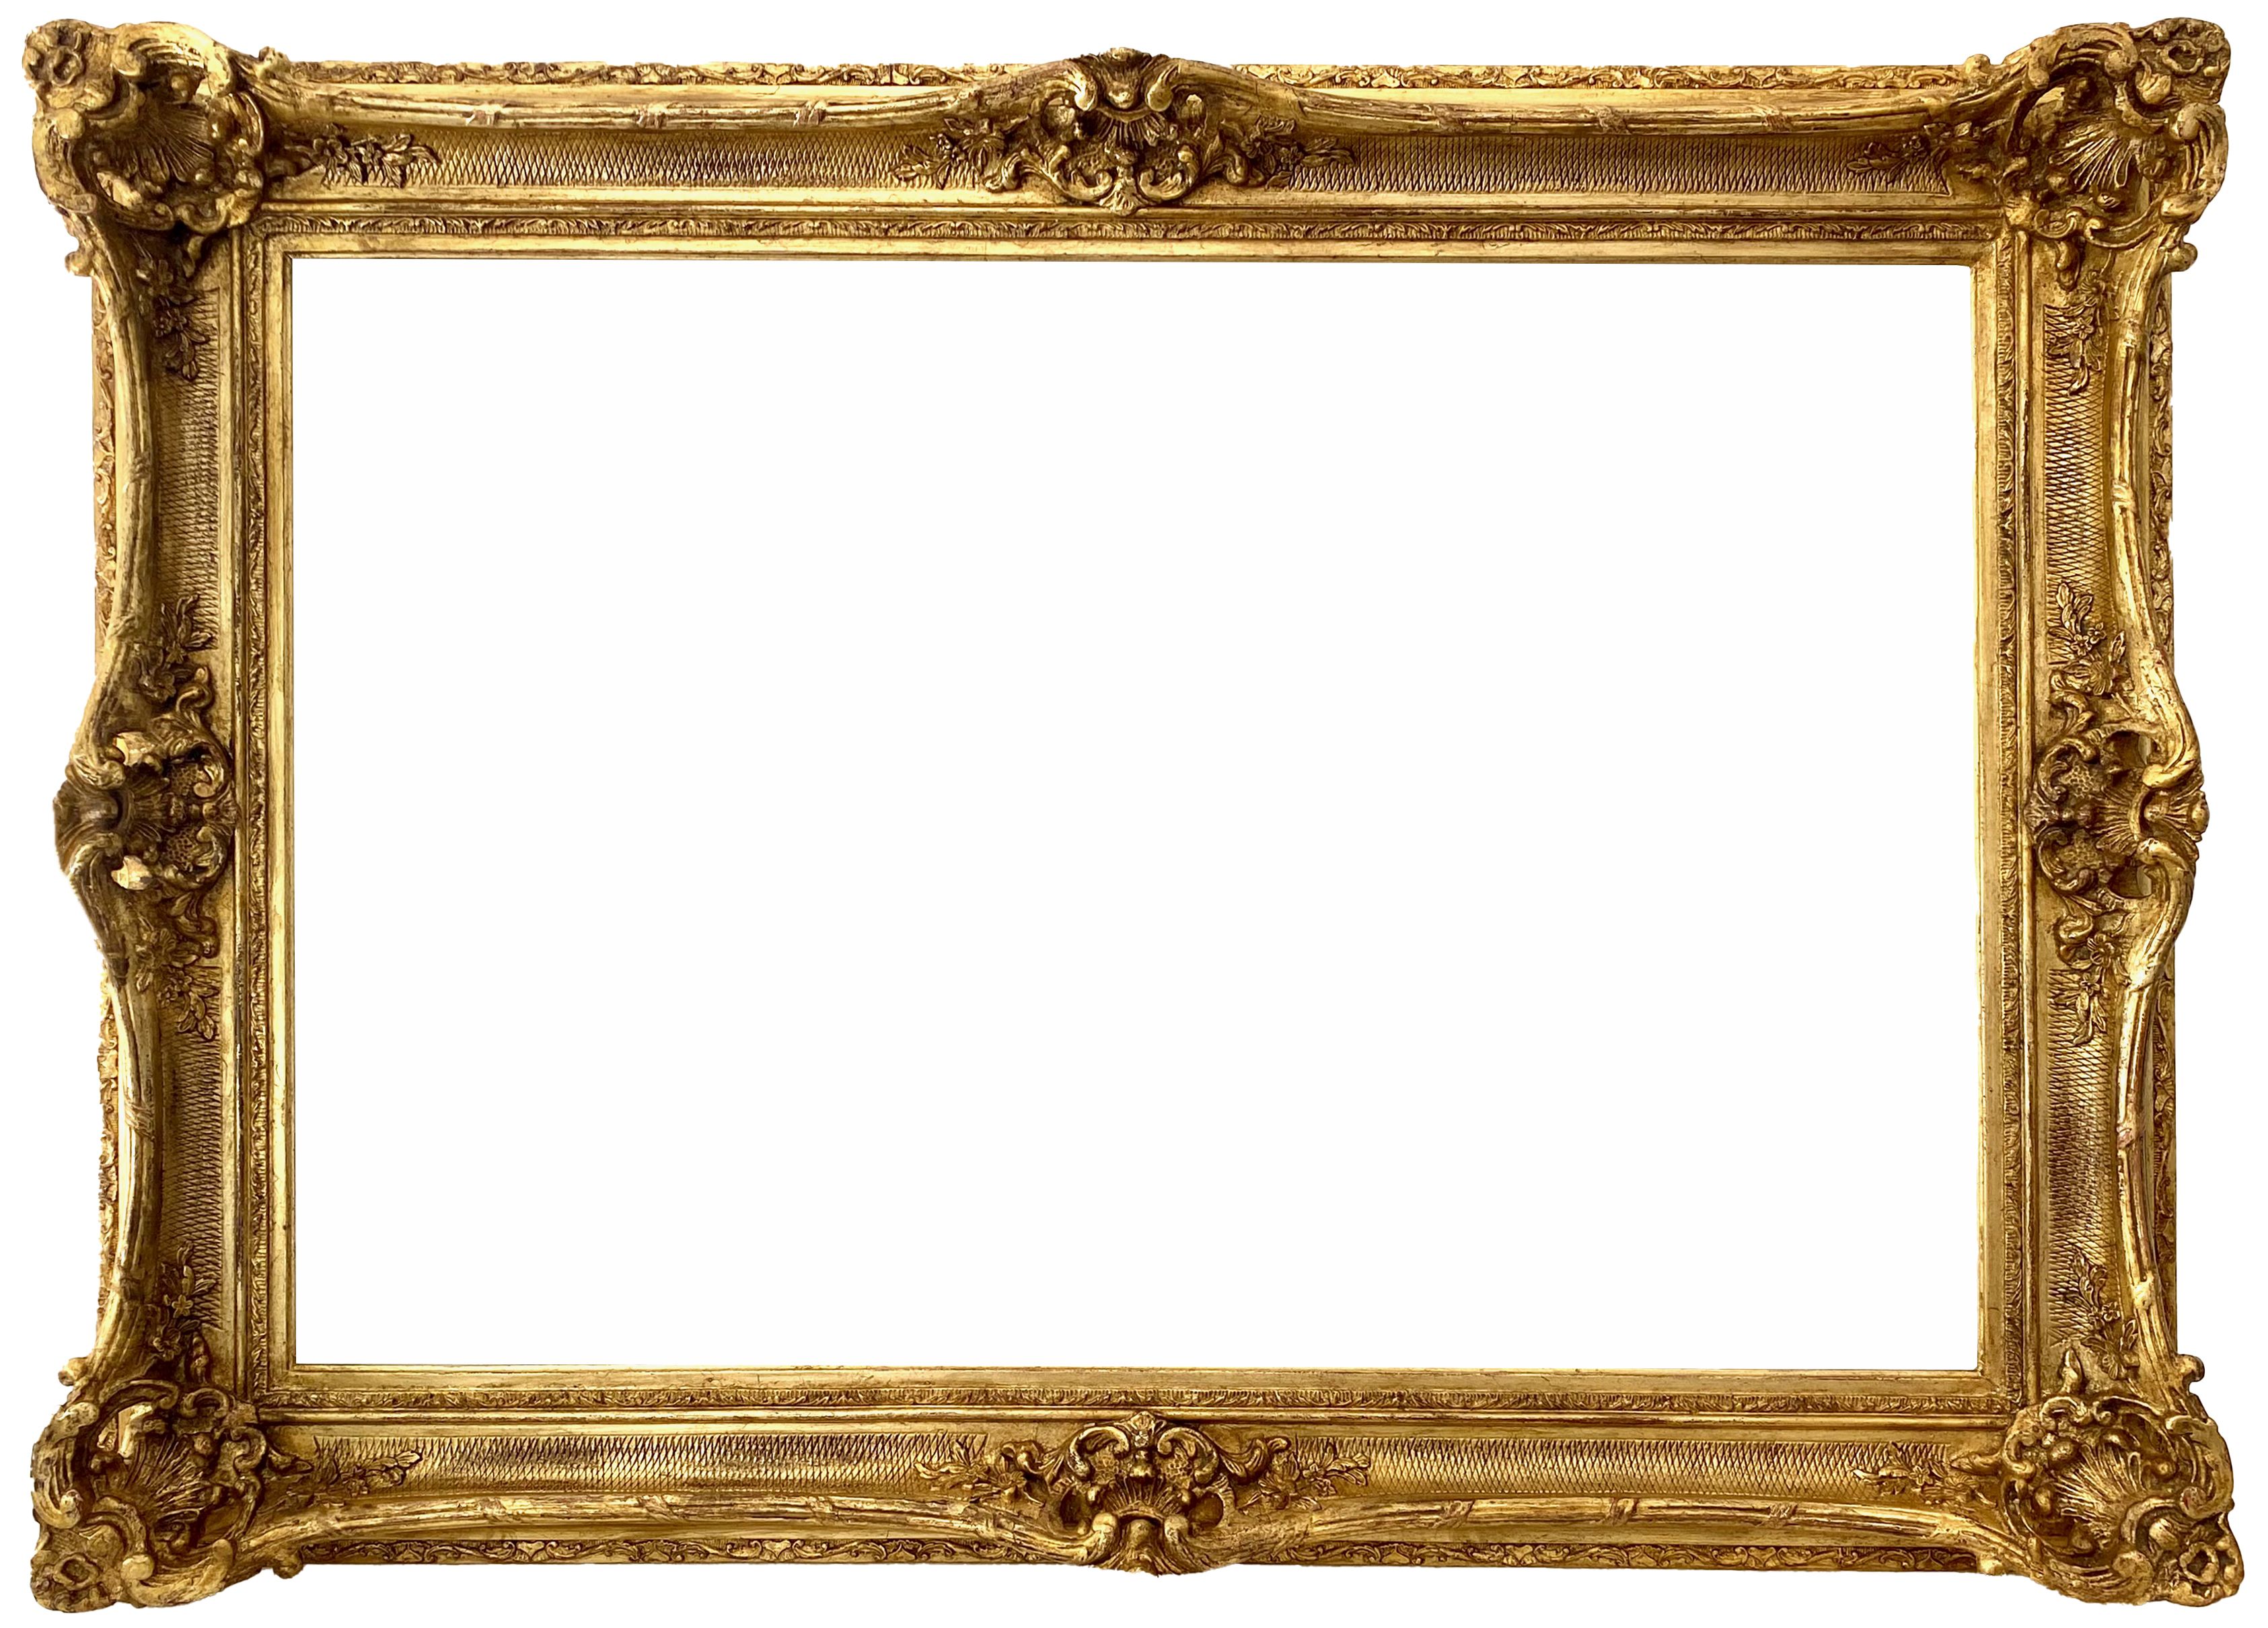 Cadre de style Louis XV - 82,30 x 54,20 - REF - 1622